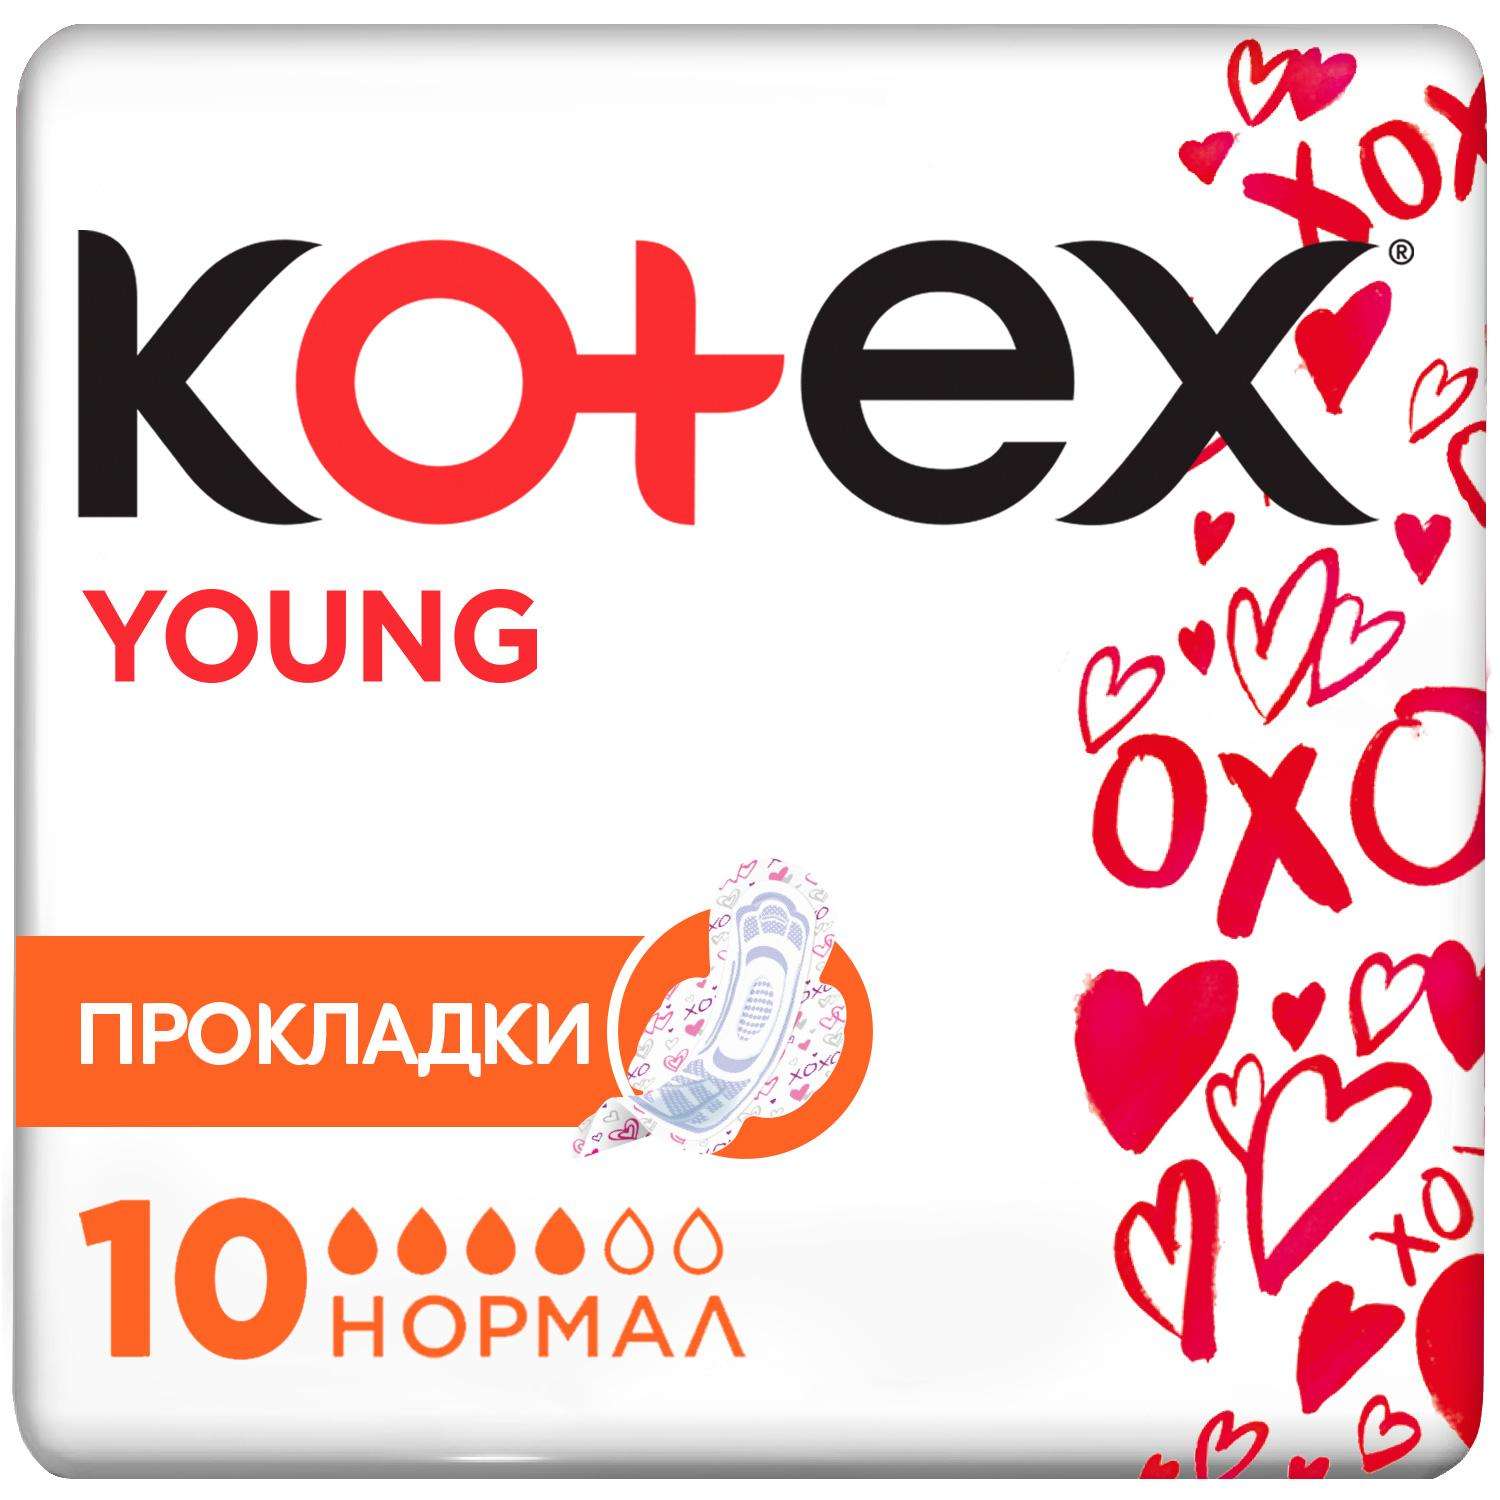 Прокладки гигиенические Kotex Young для девочек 10шт - фото 2